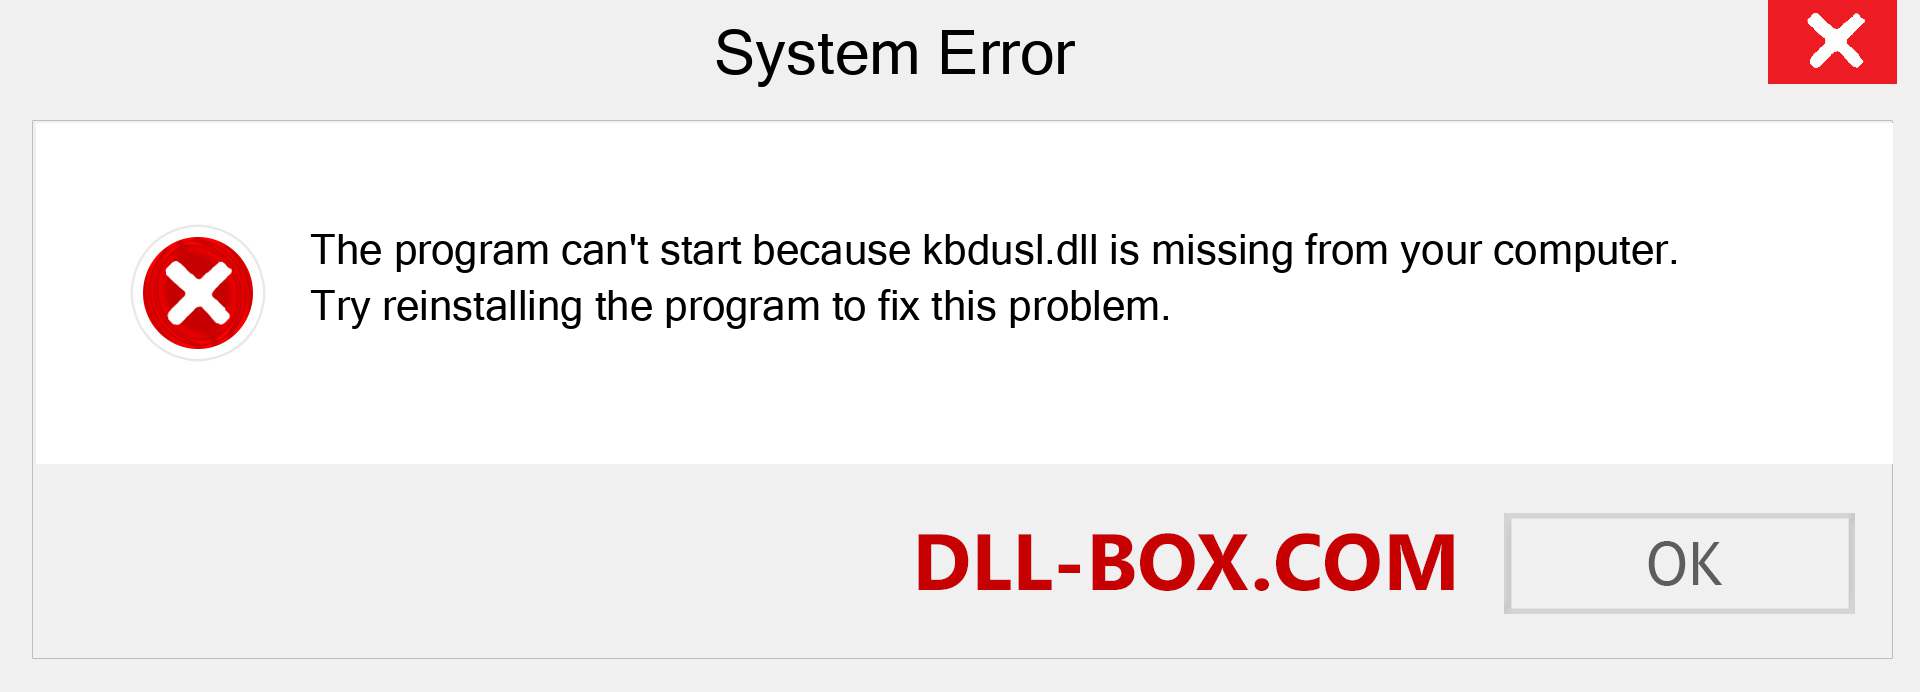  kbdusl.dll file is missing?. Download for Windows 7, 8, 10 - Fix  kbdusl dll Missing Error on Windows, photos, images